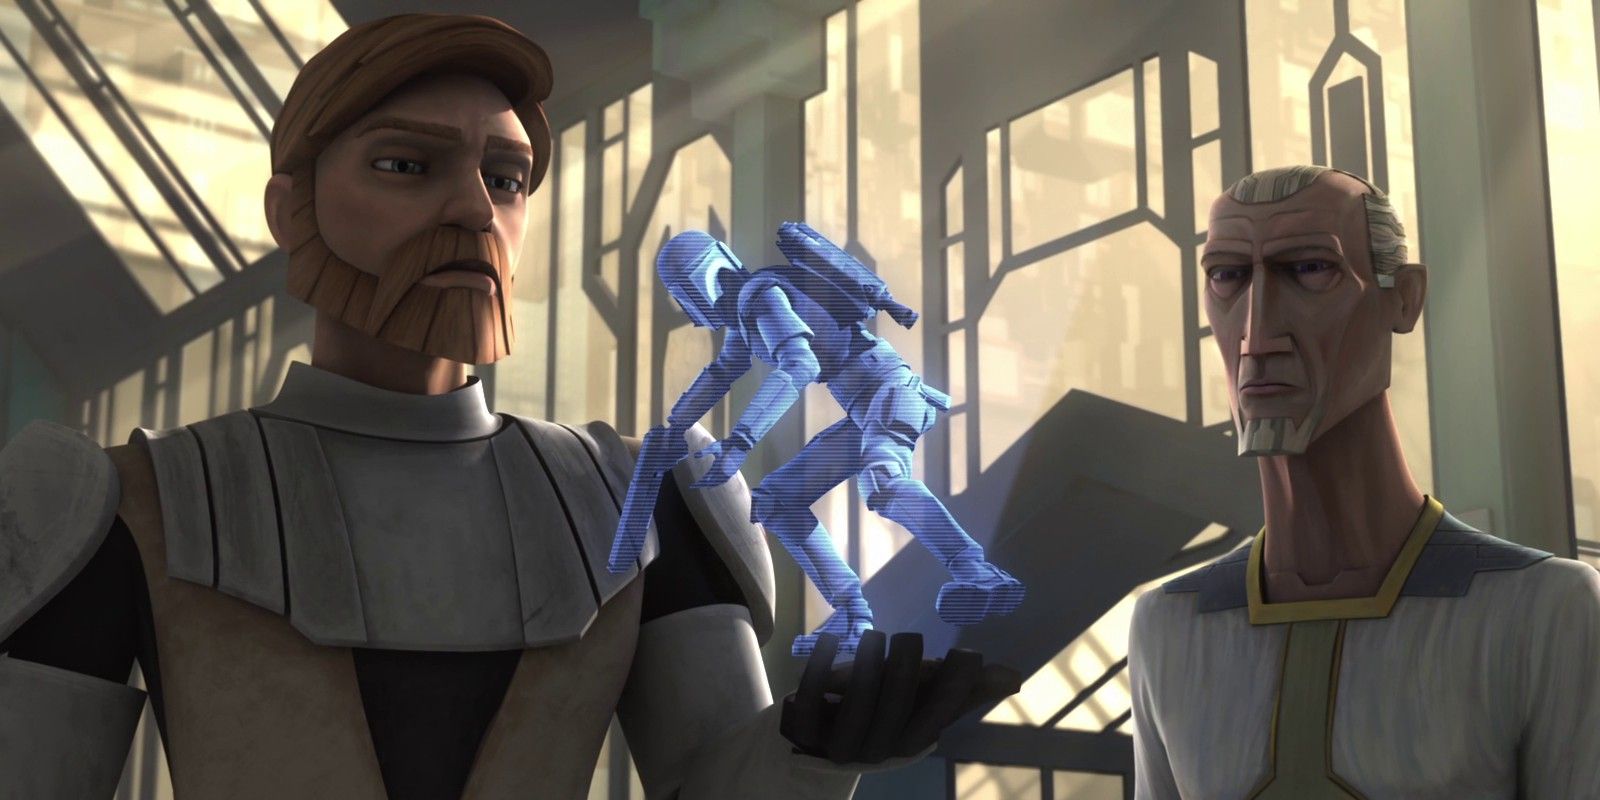 Obi-Wan Kenobi, Jango Fett and Almec in Star Wars The Clone Wars